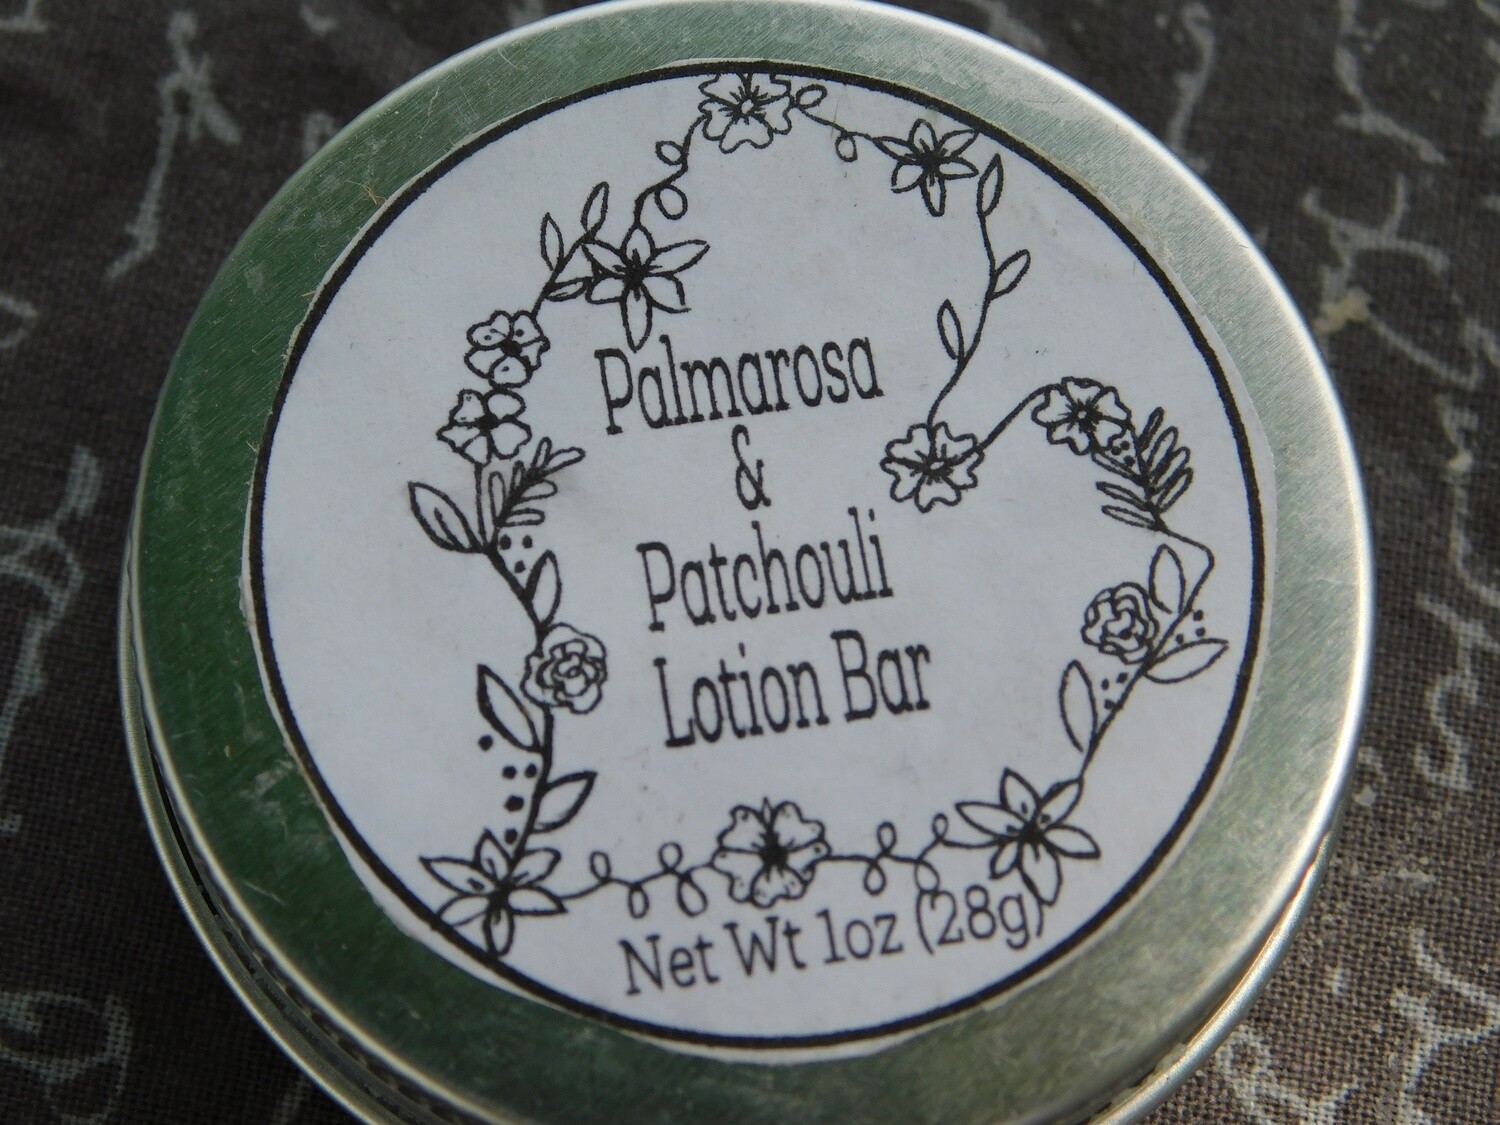 Palmarosa Patchouli 1oz Lotion Bar